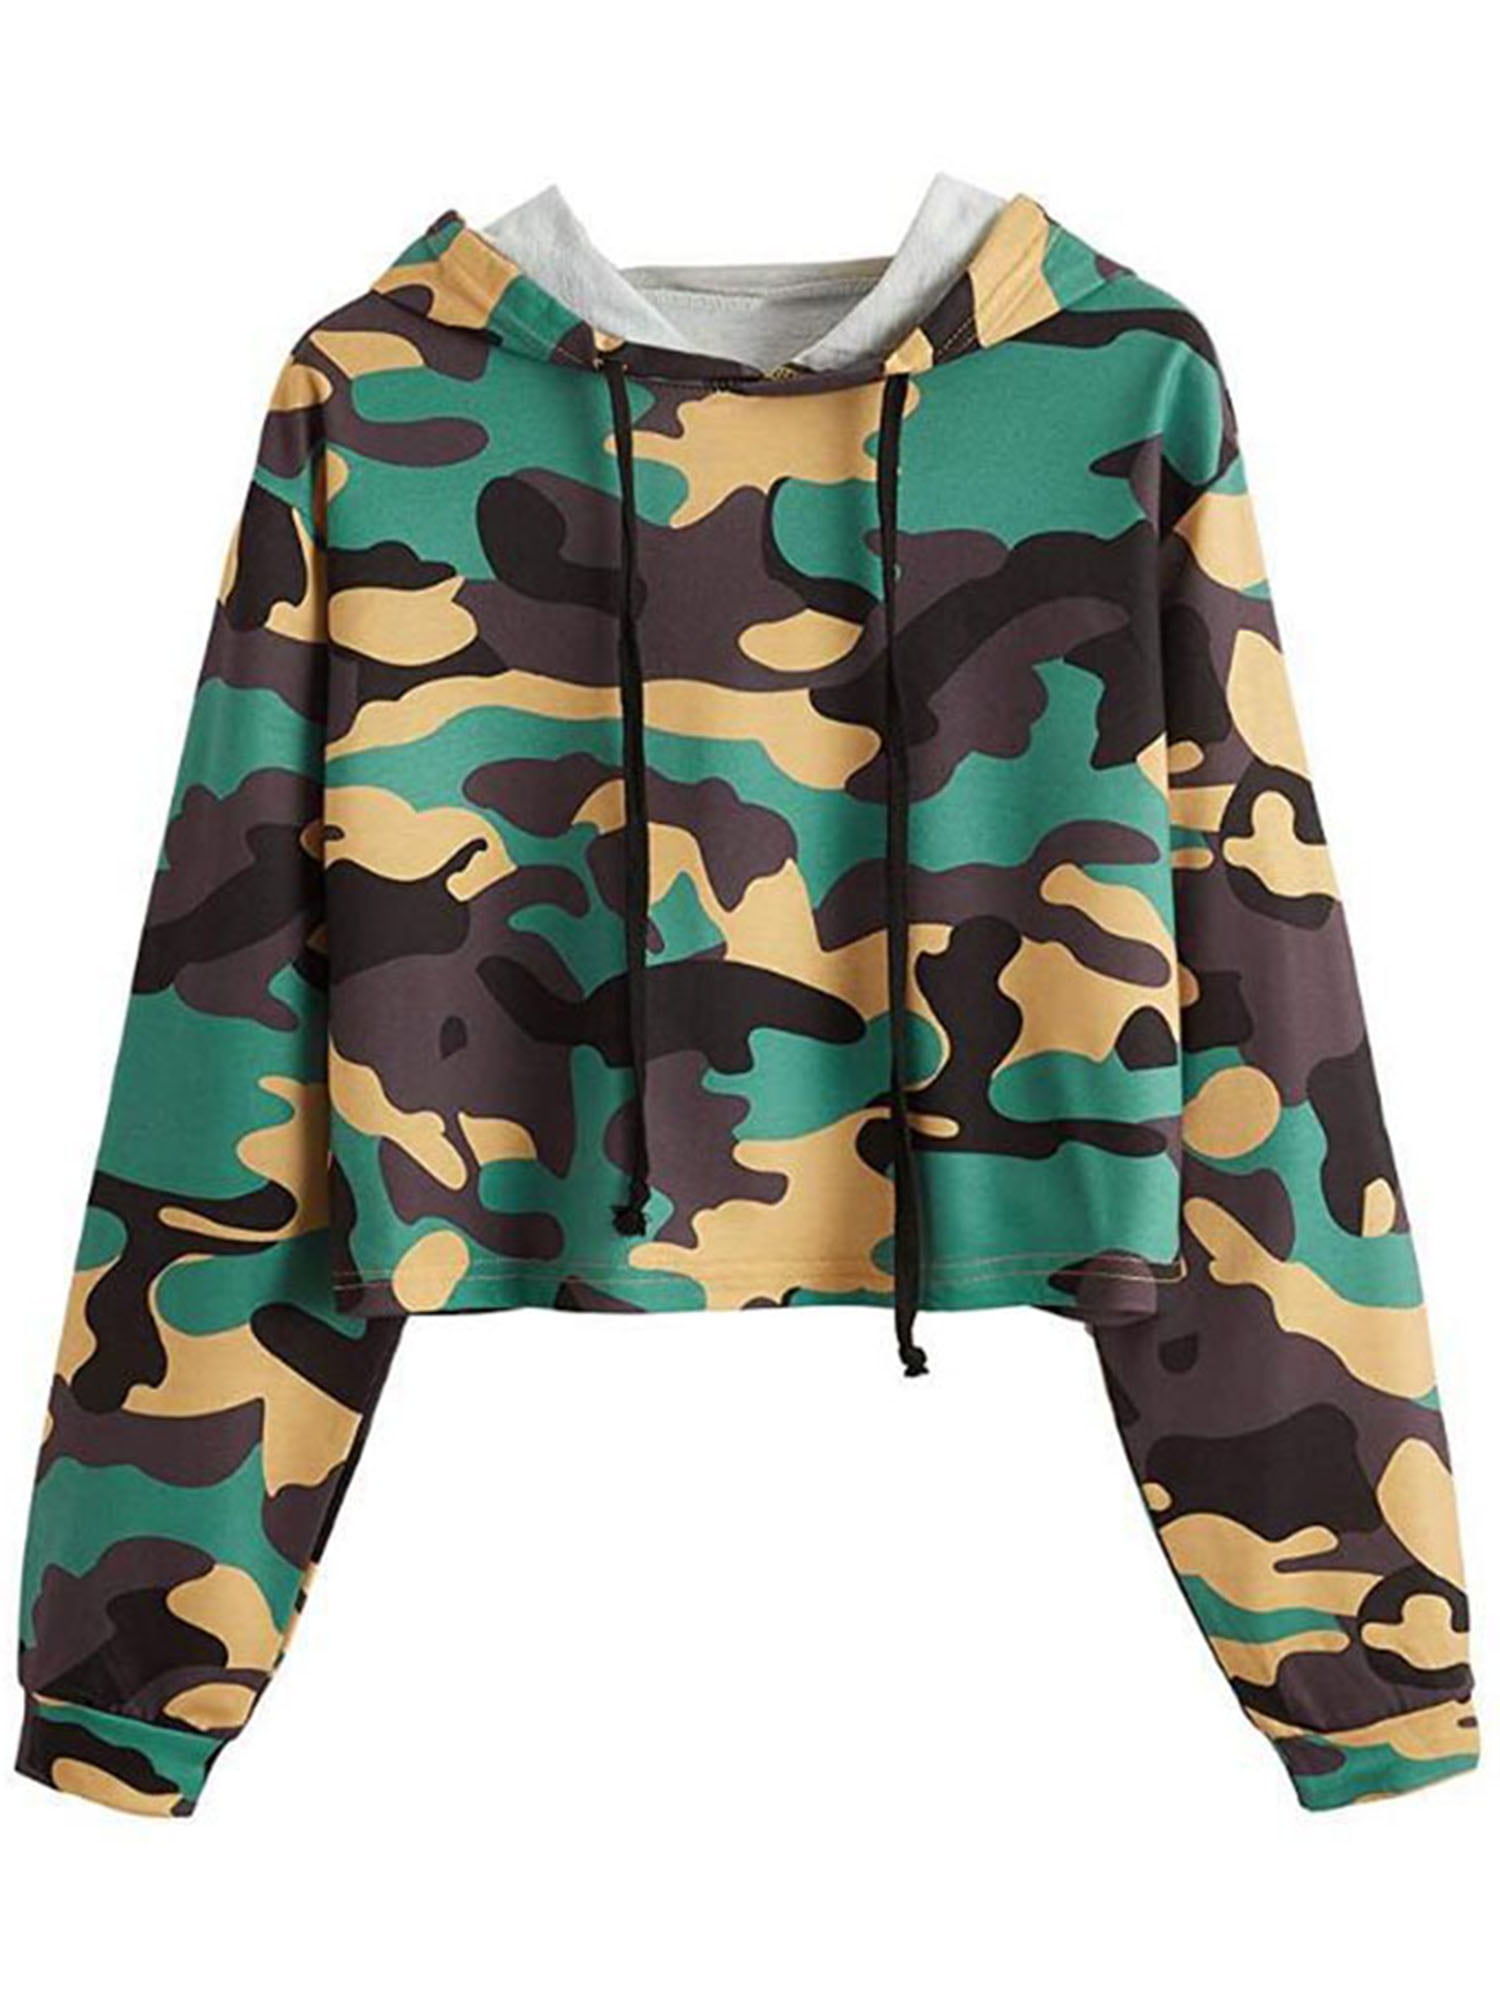 Ghazzi Women Hoodie Camouflage Printed Pullover Top Long Sleeve Hoodie Sweatshirt Crop Top Blouse 